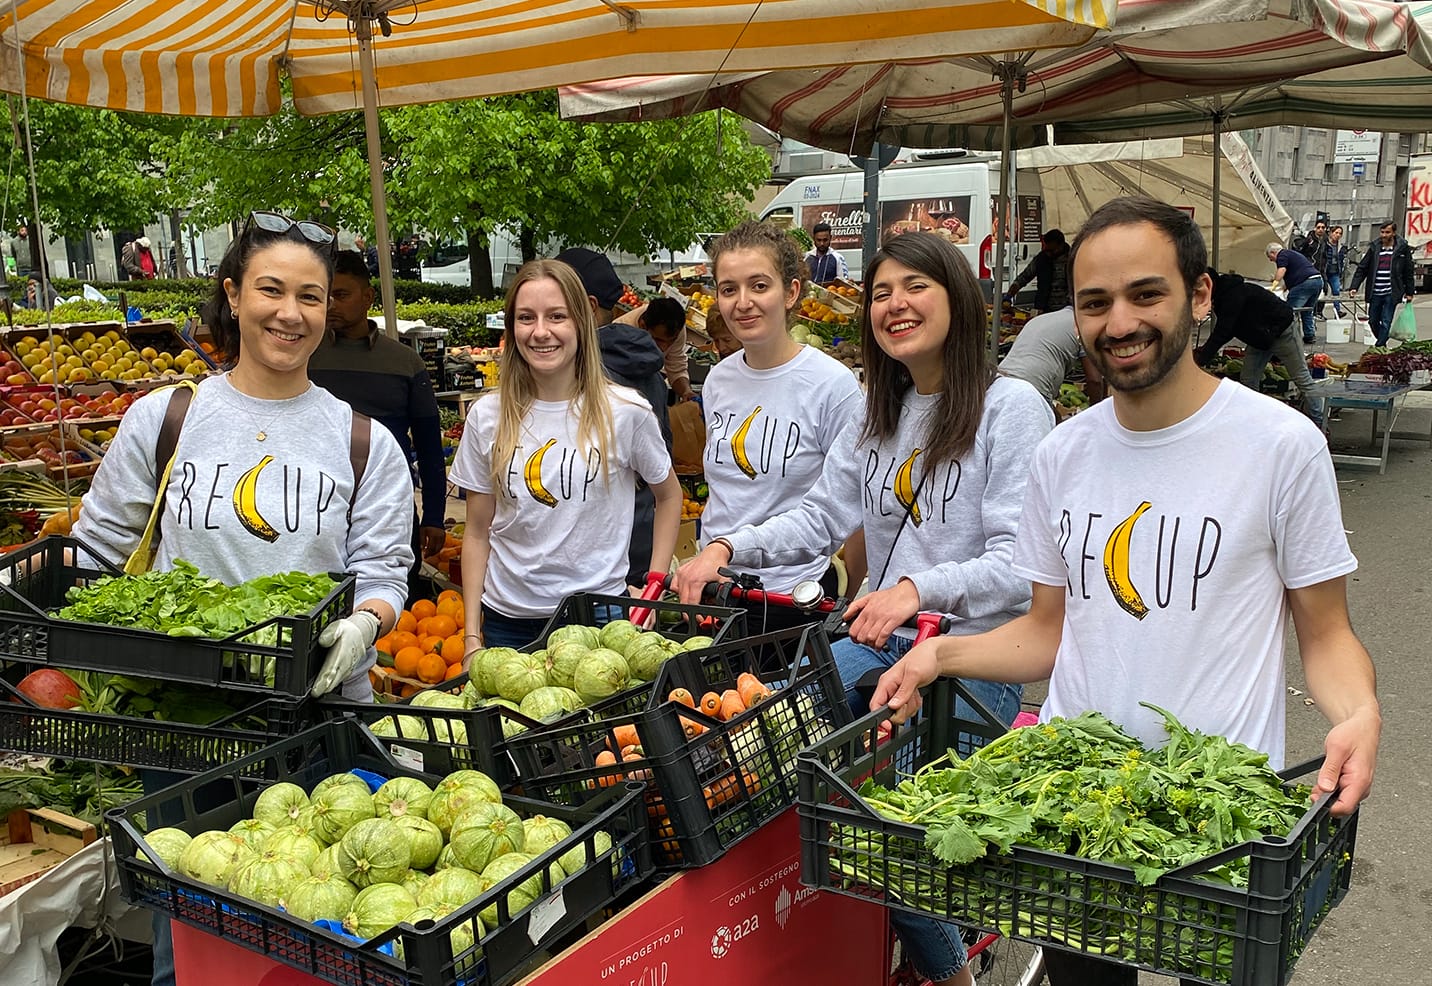 Połącz radość nauki nowego języka z satysfakcjonującym doświadczeniem wolontariatu w Mediolanie